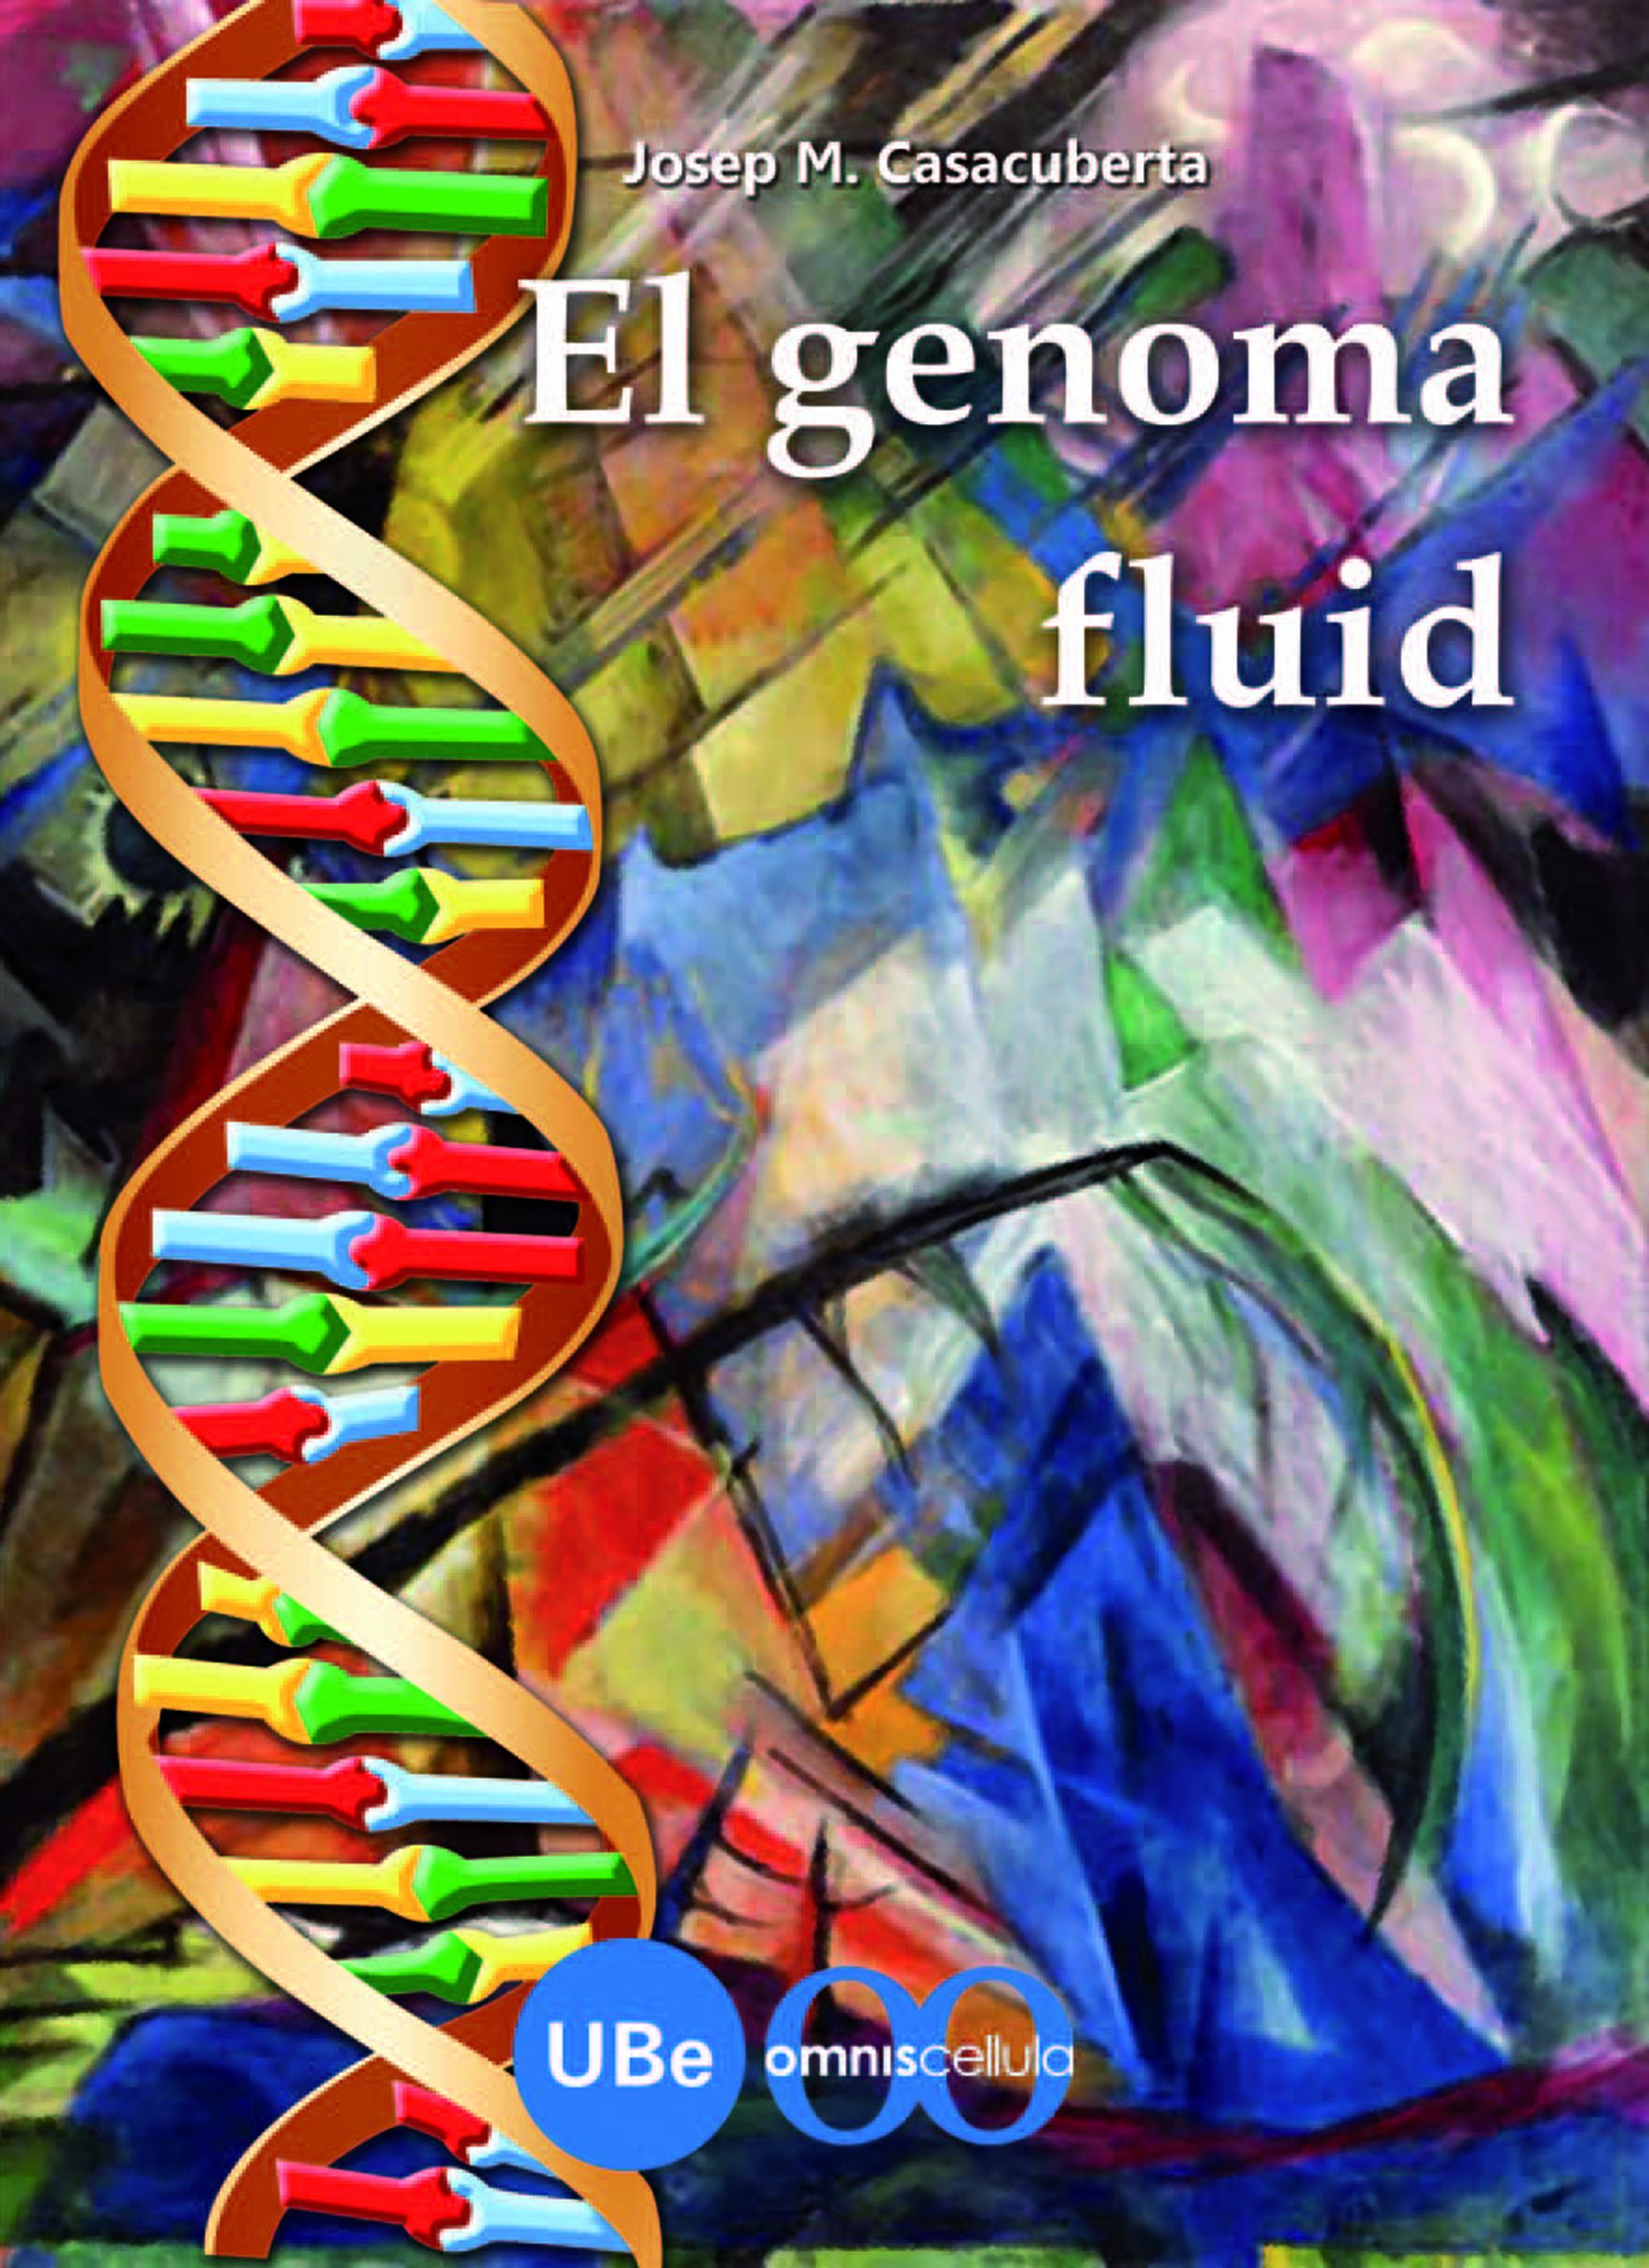 El genoma fluid